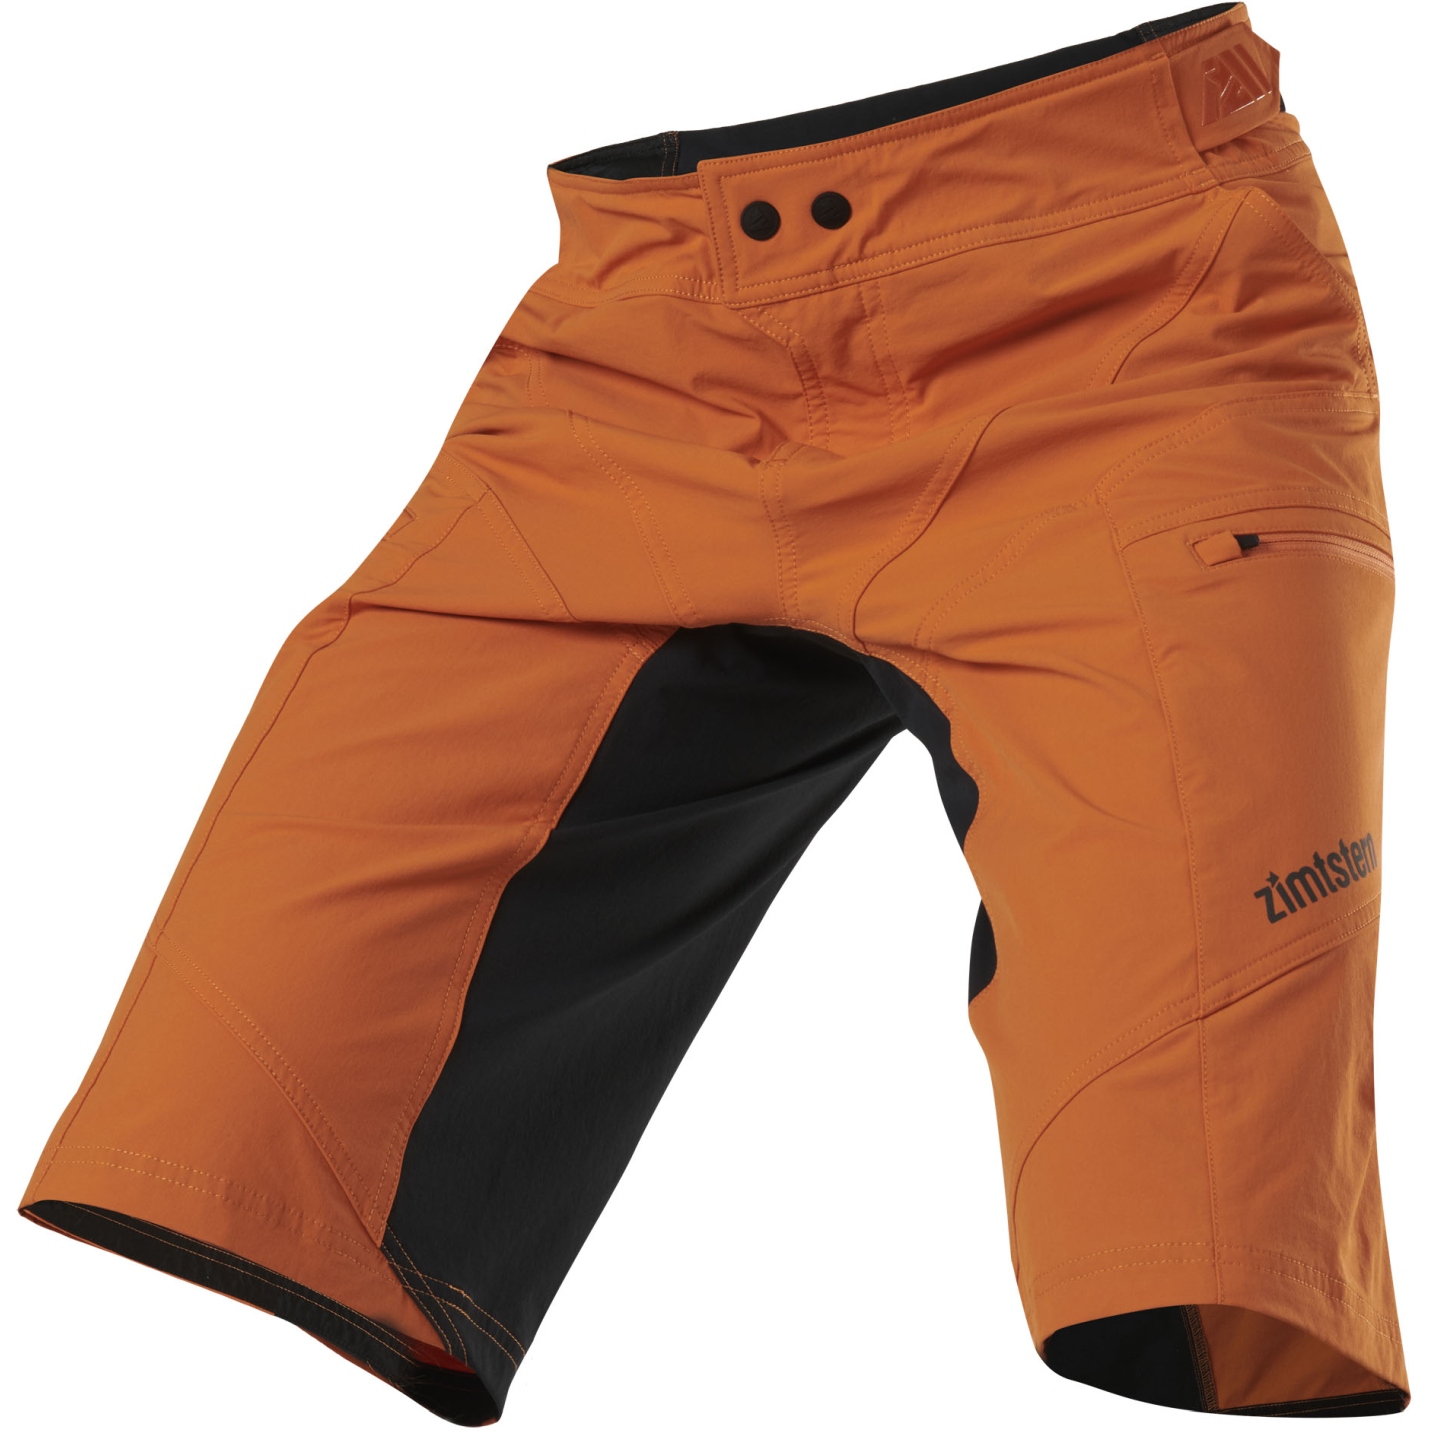 Produktbild von Zimtstern Trailstar Evo MTB-Shorts Herren - Burnt Orange/Pirate Black